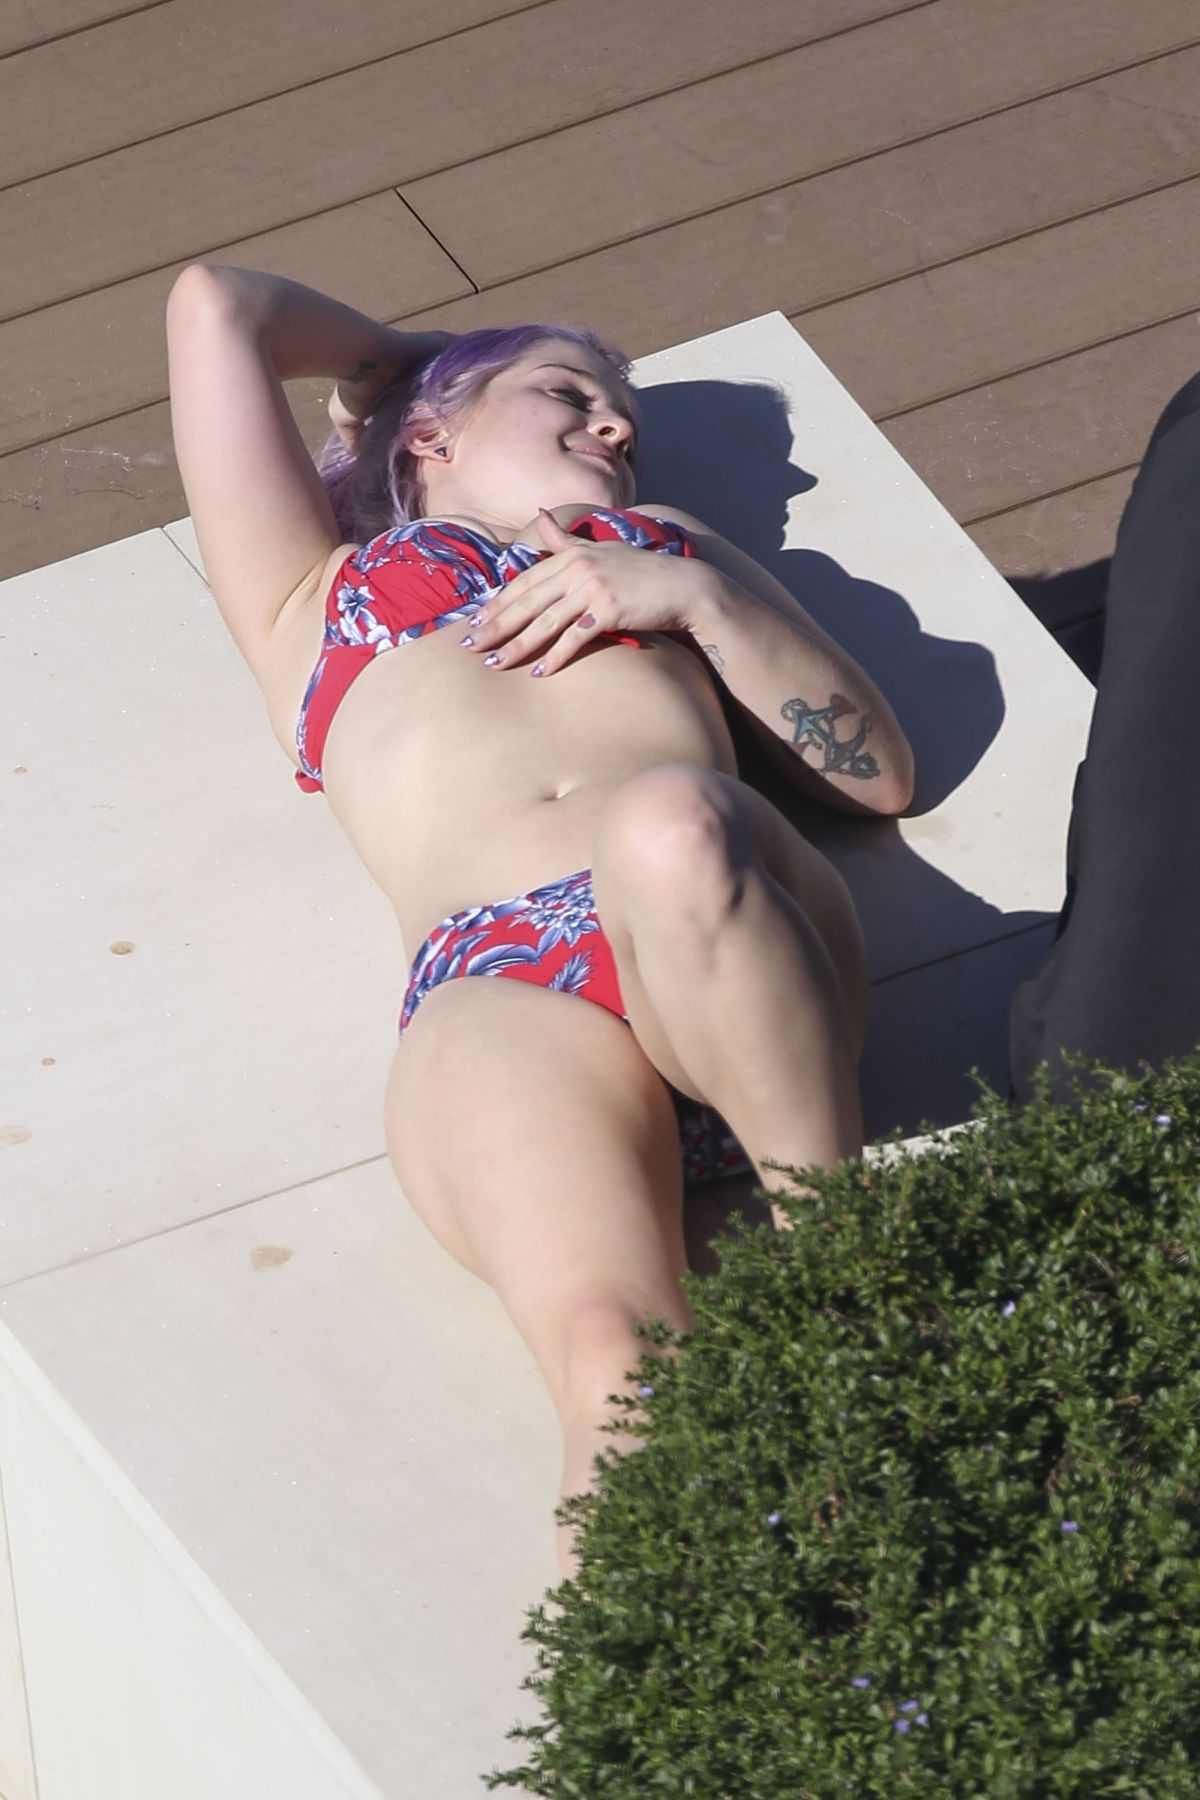 KELLY OSBOURNE in Bikini at a Pool in Sydney.